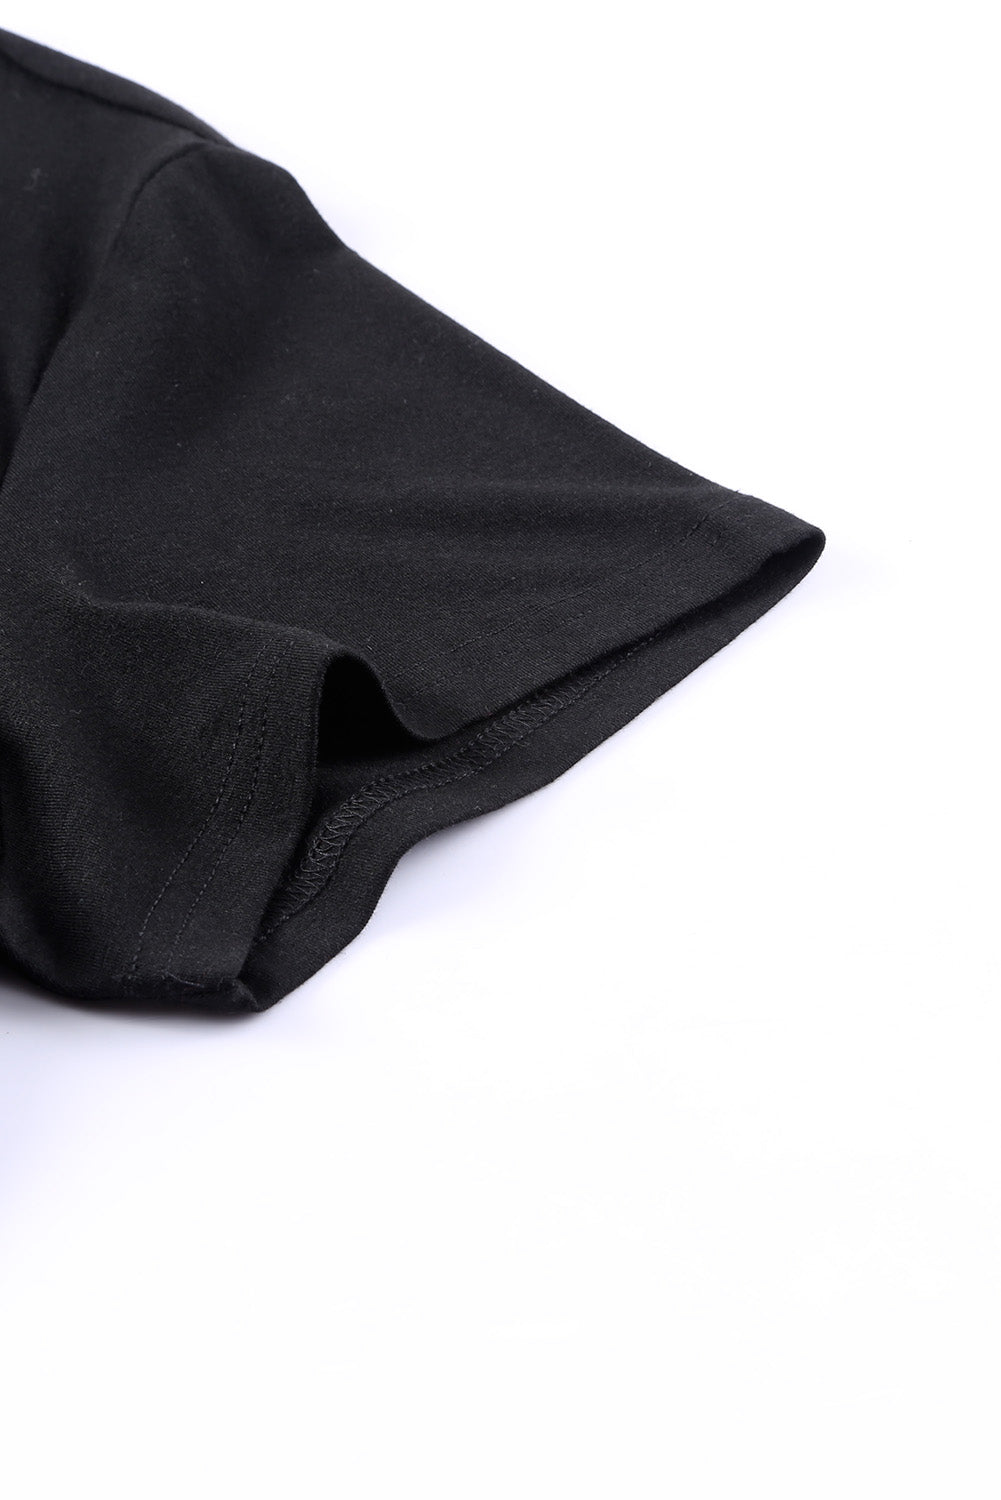 Črna velika majica z v-izrezom in prsnim žepom z bleščicami